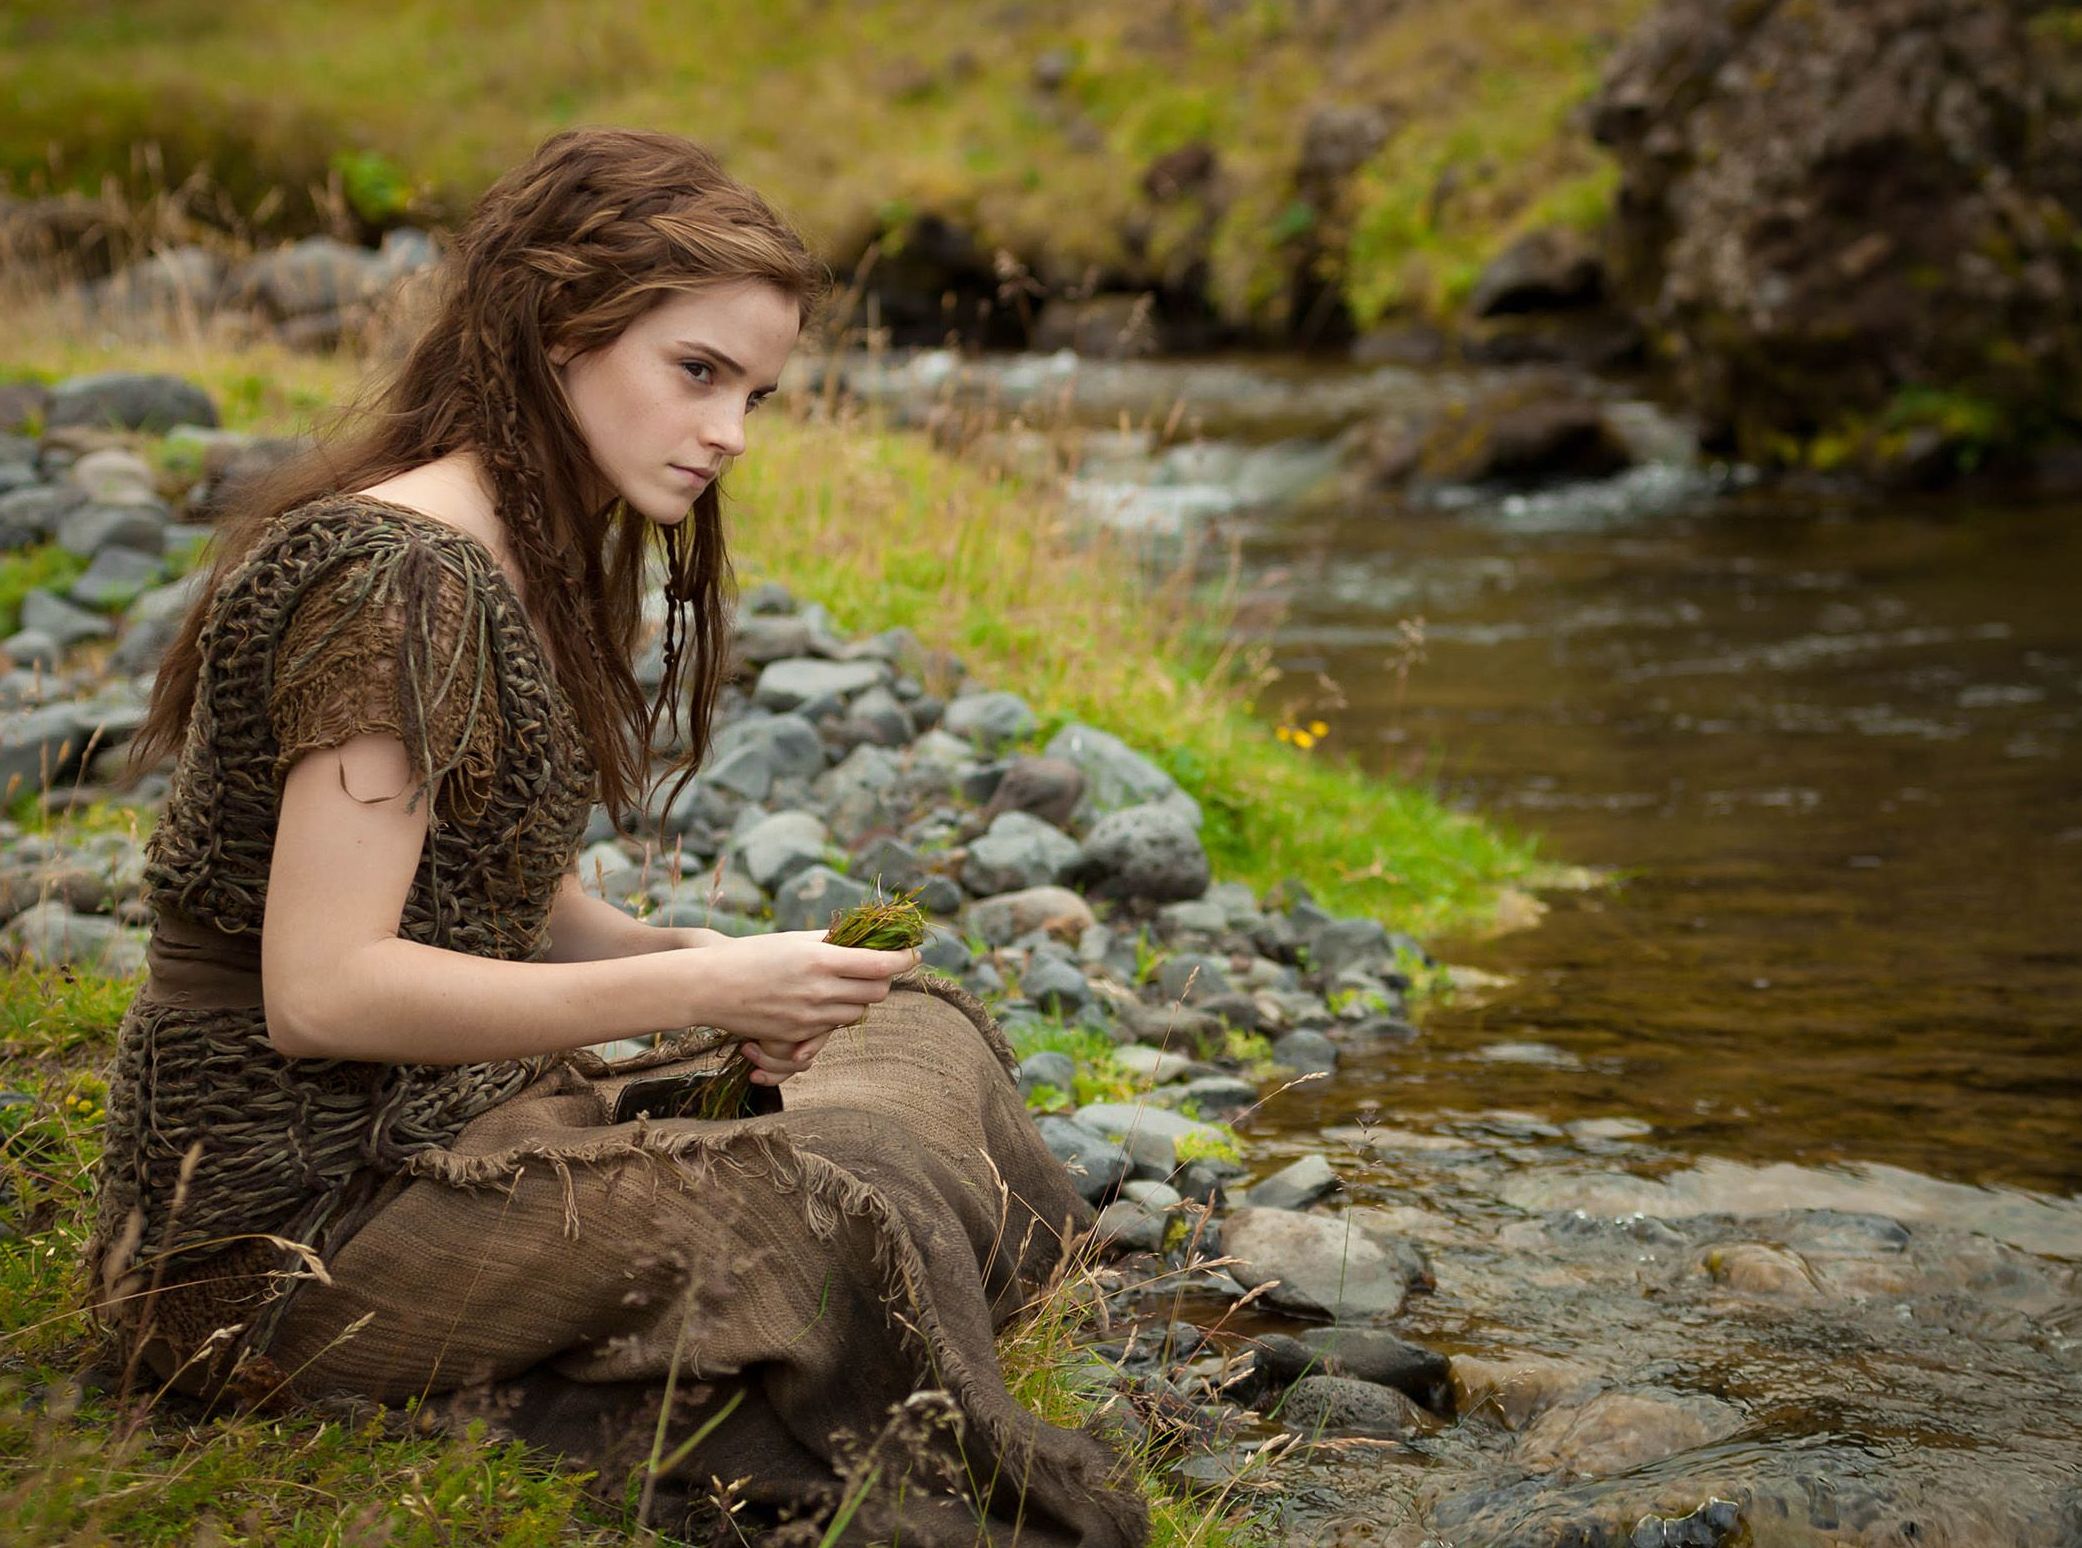 Emma Watson as Ila sitting by the water in Noah